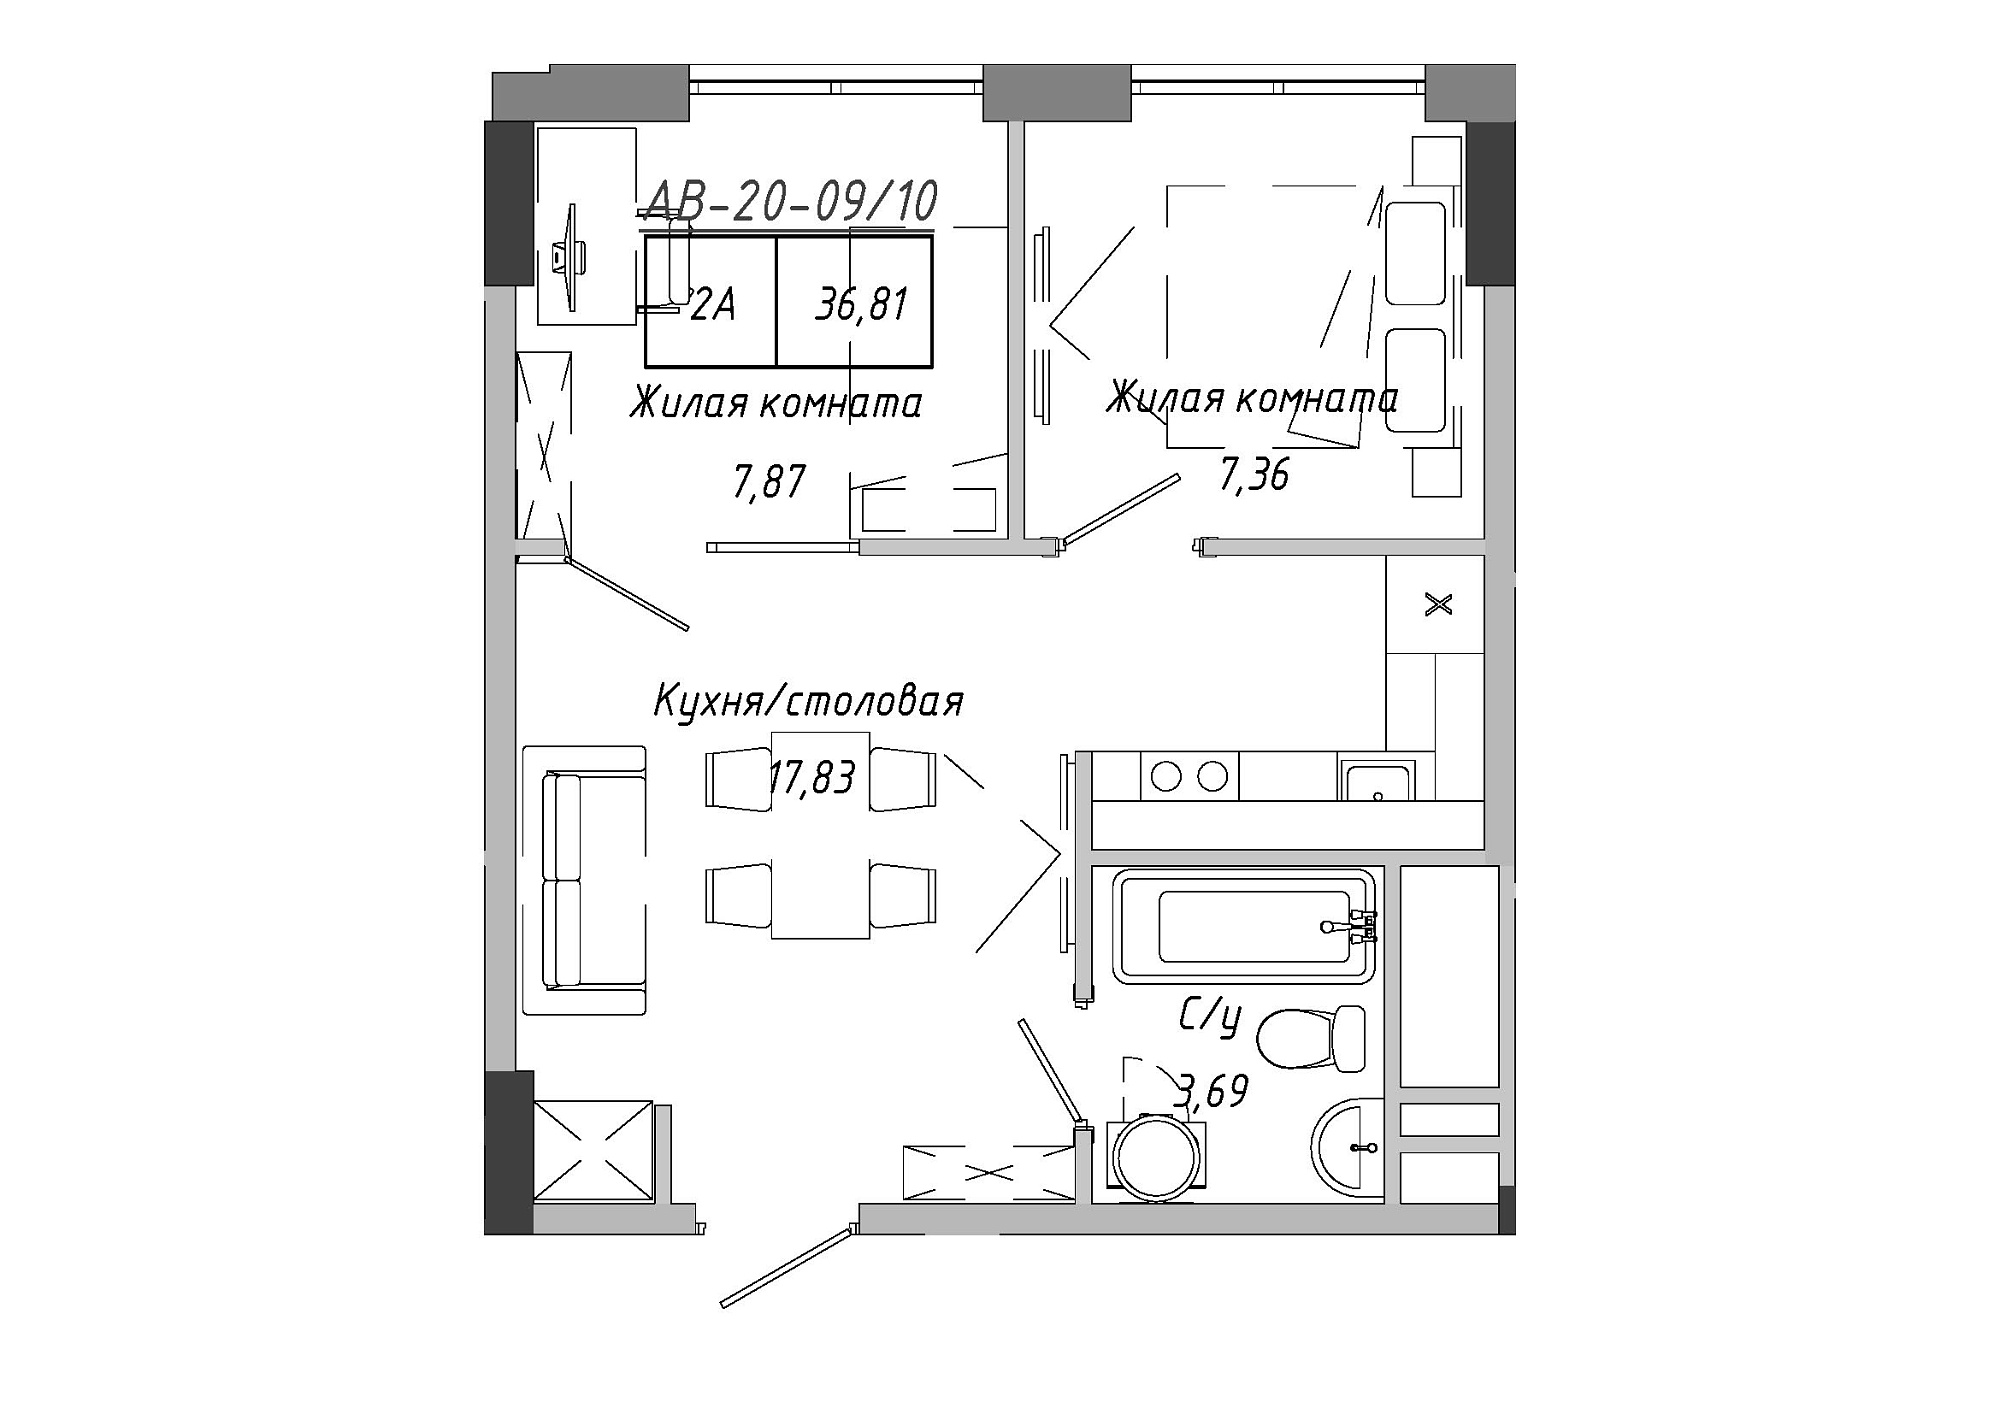 Планування 2-к квартира площею 37.15м2, AB-20-09/00010.